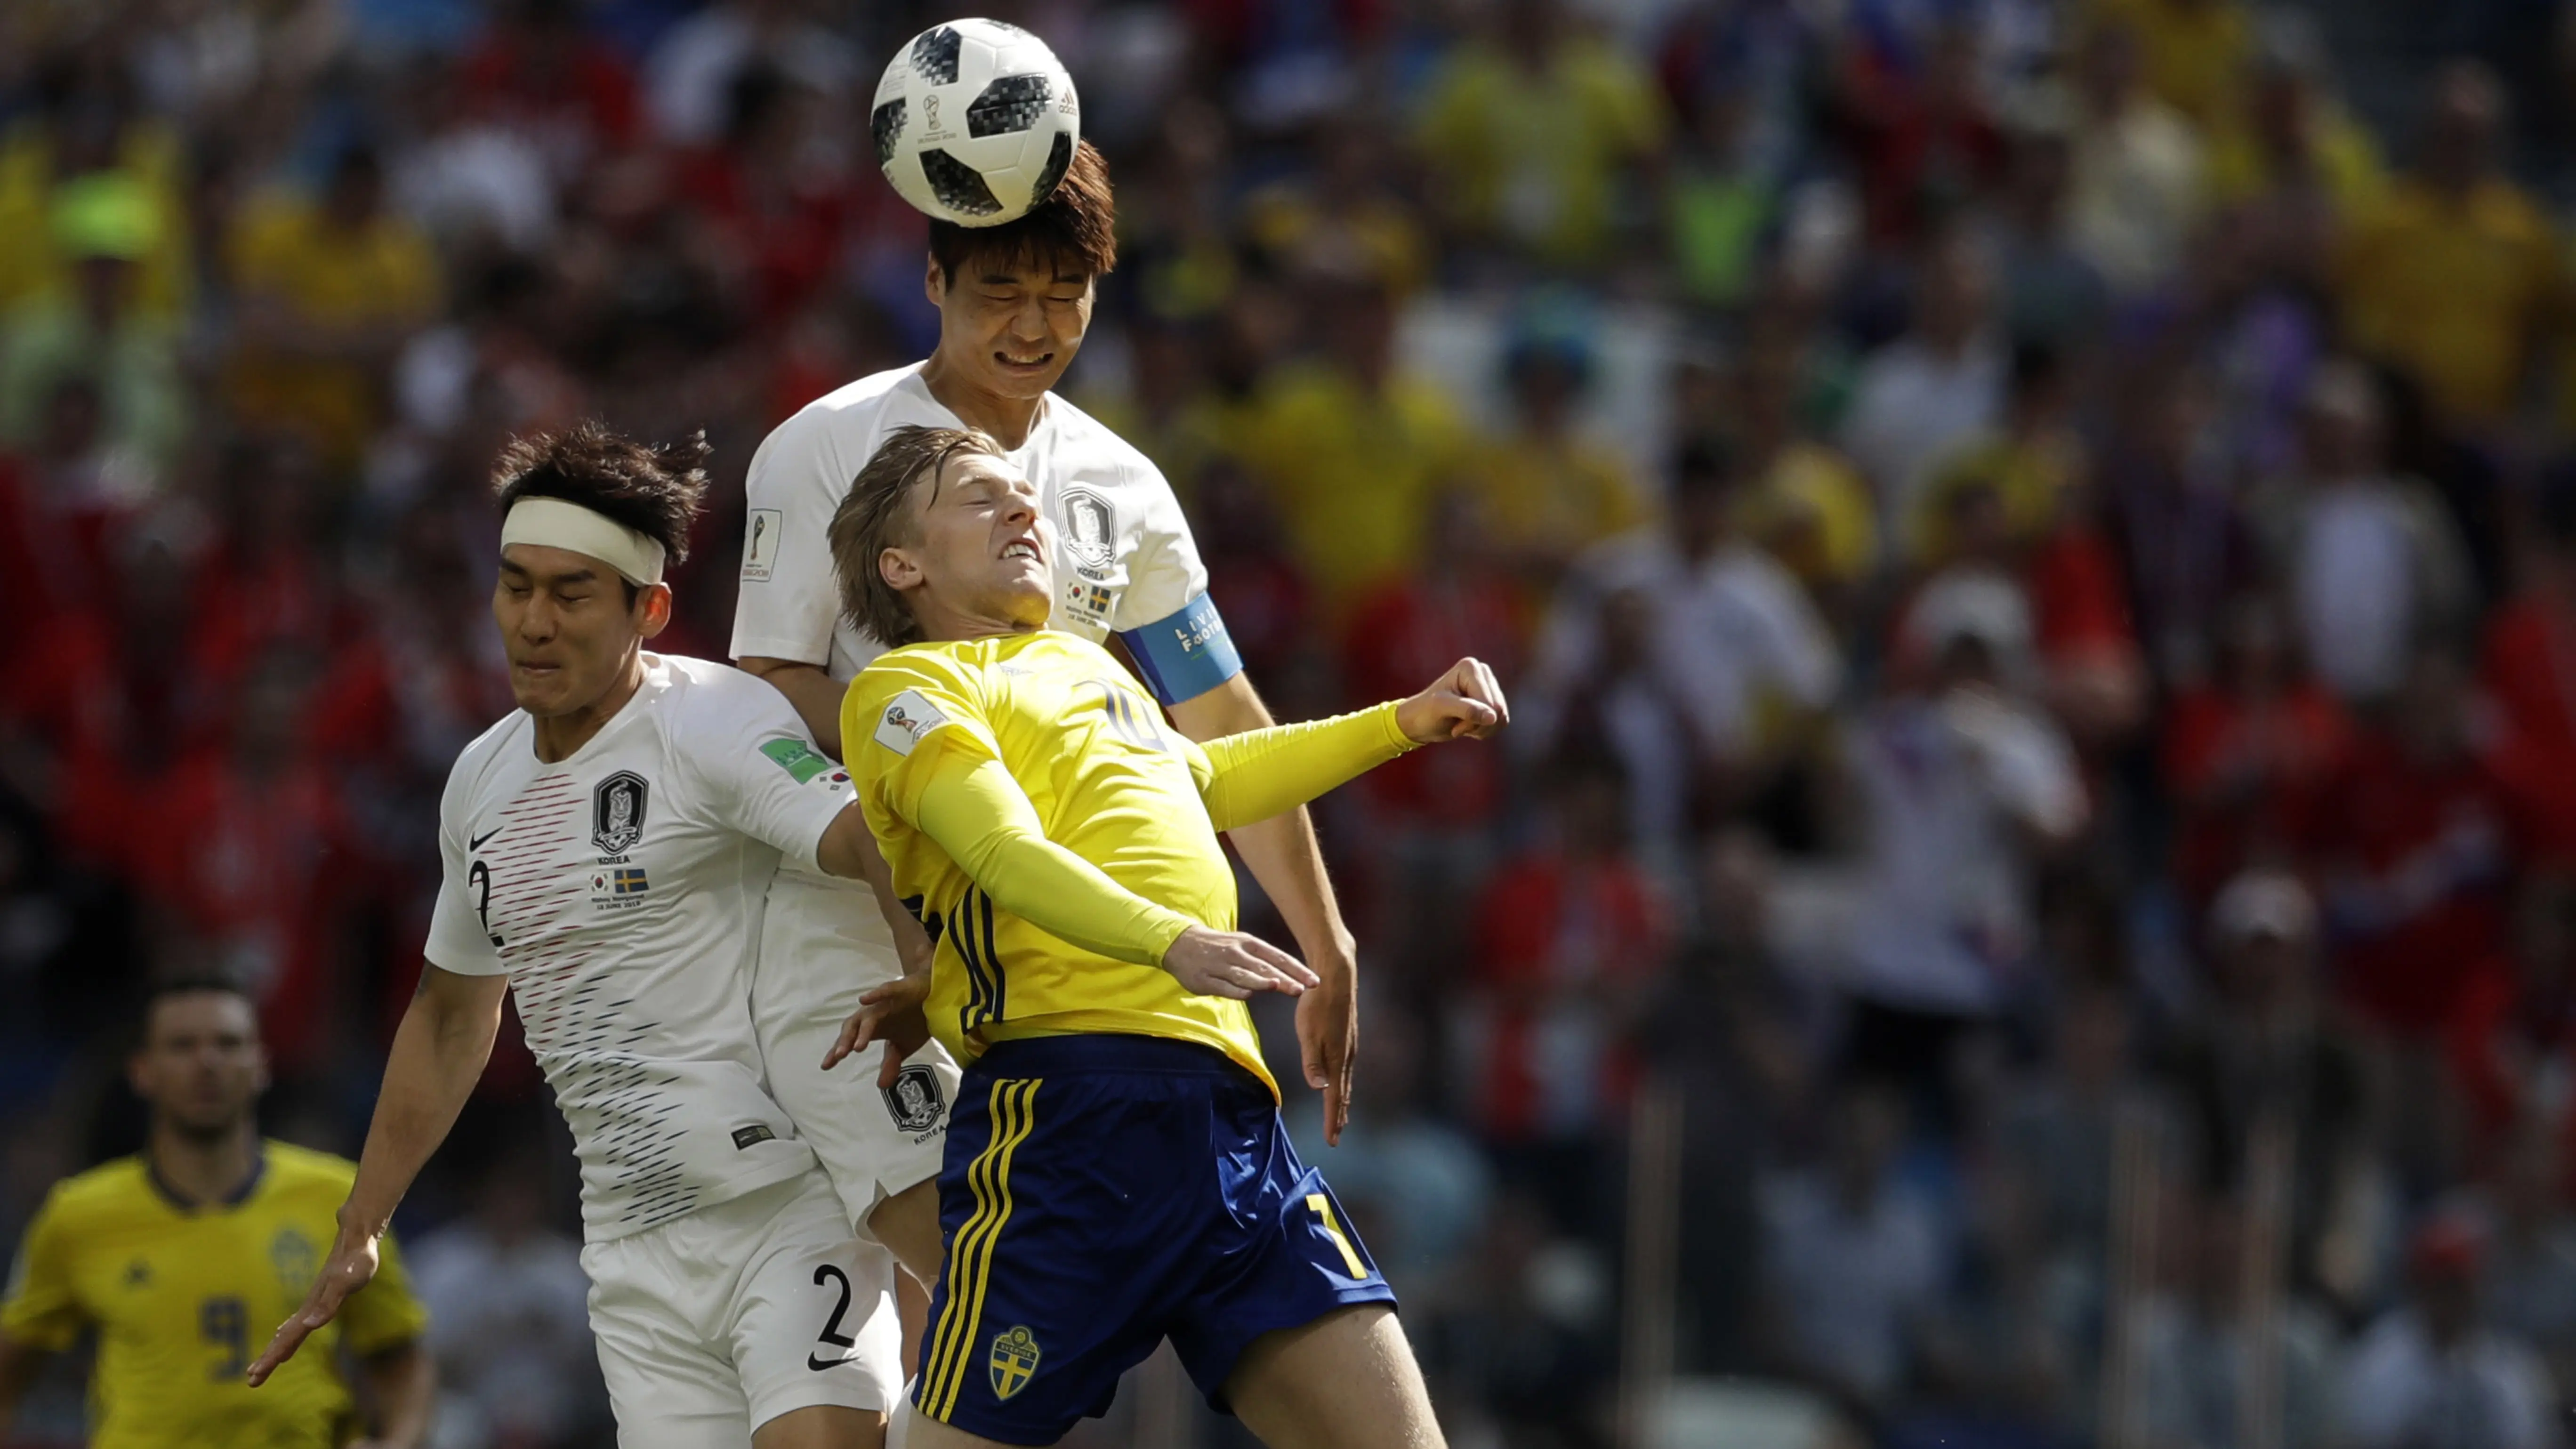 Pemain Korea Selatan, Lee Yong dan Ki Sung-yueng berusaha menghalau bola dari pemain Swedia pada laga grup E Piala Dunia 2018 di Nizhny Novgorod stadium, Nizhny Novgorod, Rusia, (18/6/2018). Swedia menang 1-0. (AP/Petr David Josek)